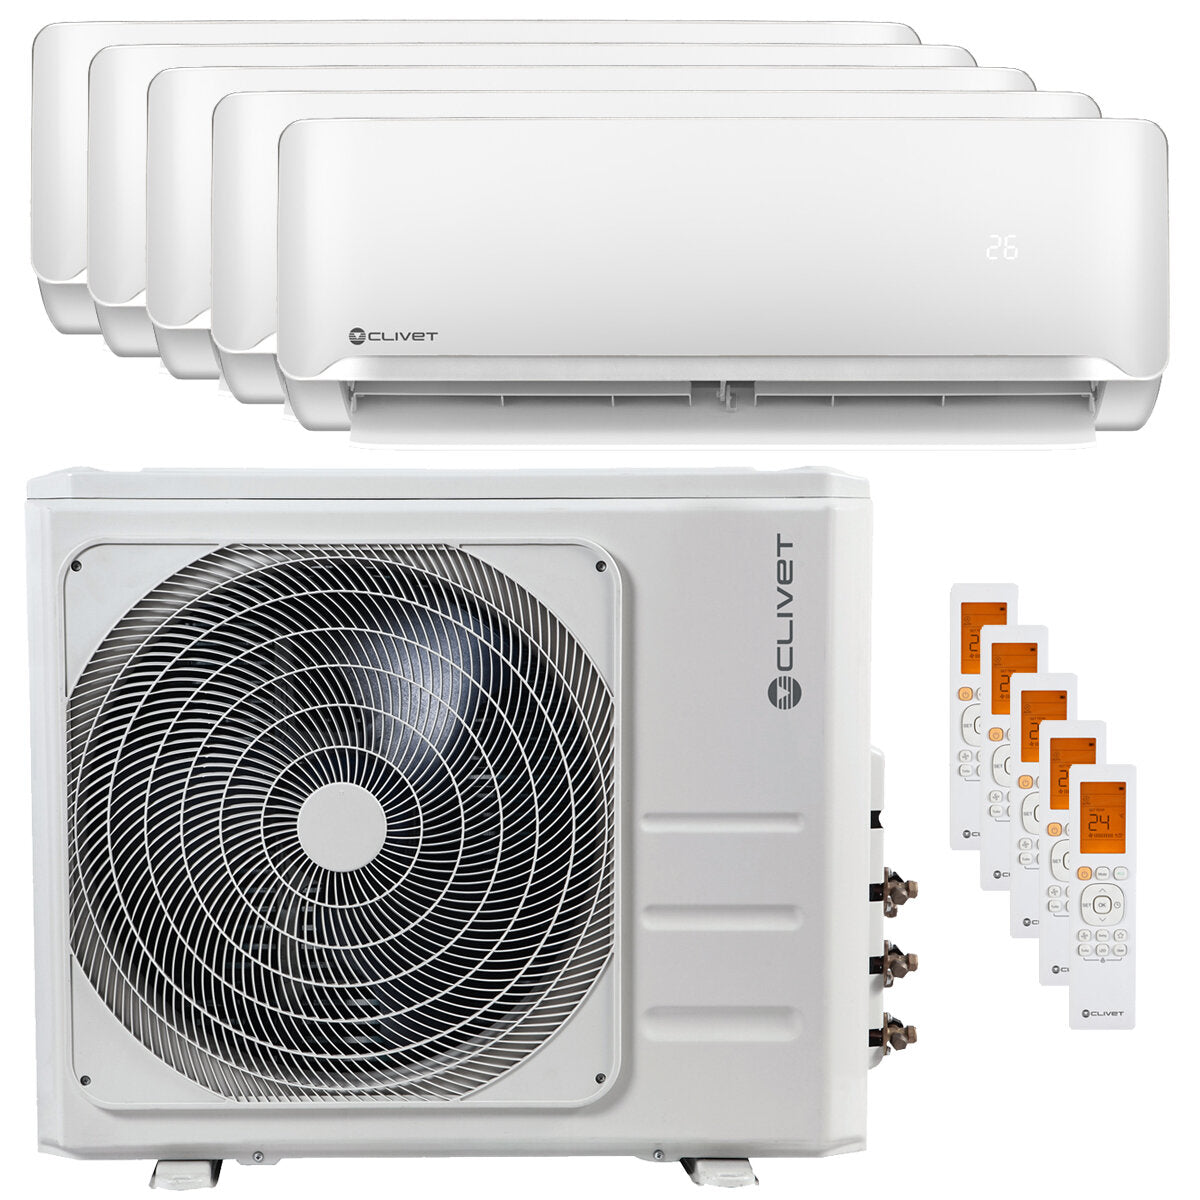 Clivet Essential 2 air conditioner penta split 7000 + 9000 + 9000 + 9000 + 18000 BTU inverter A ++ outdoor unit 12.3 kW